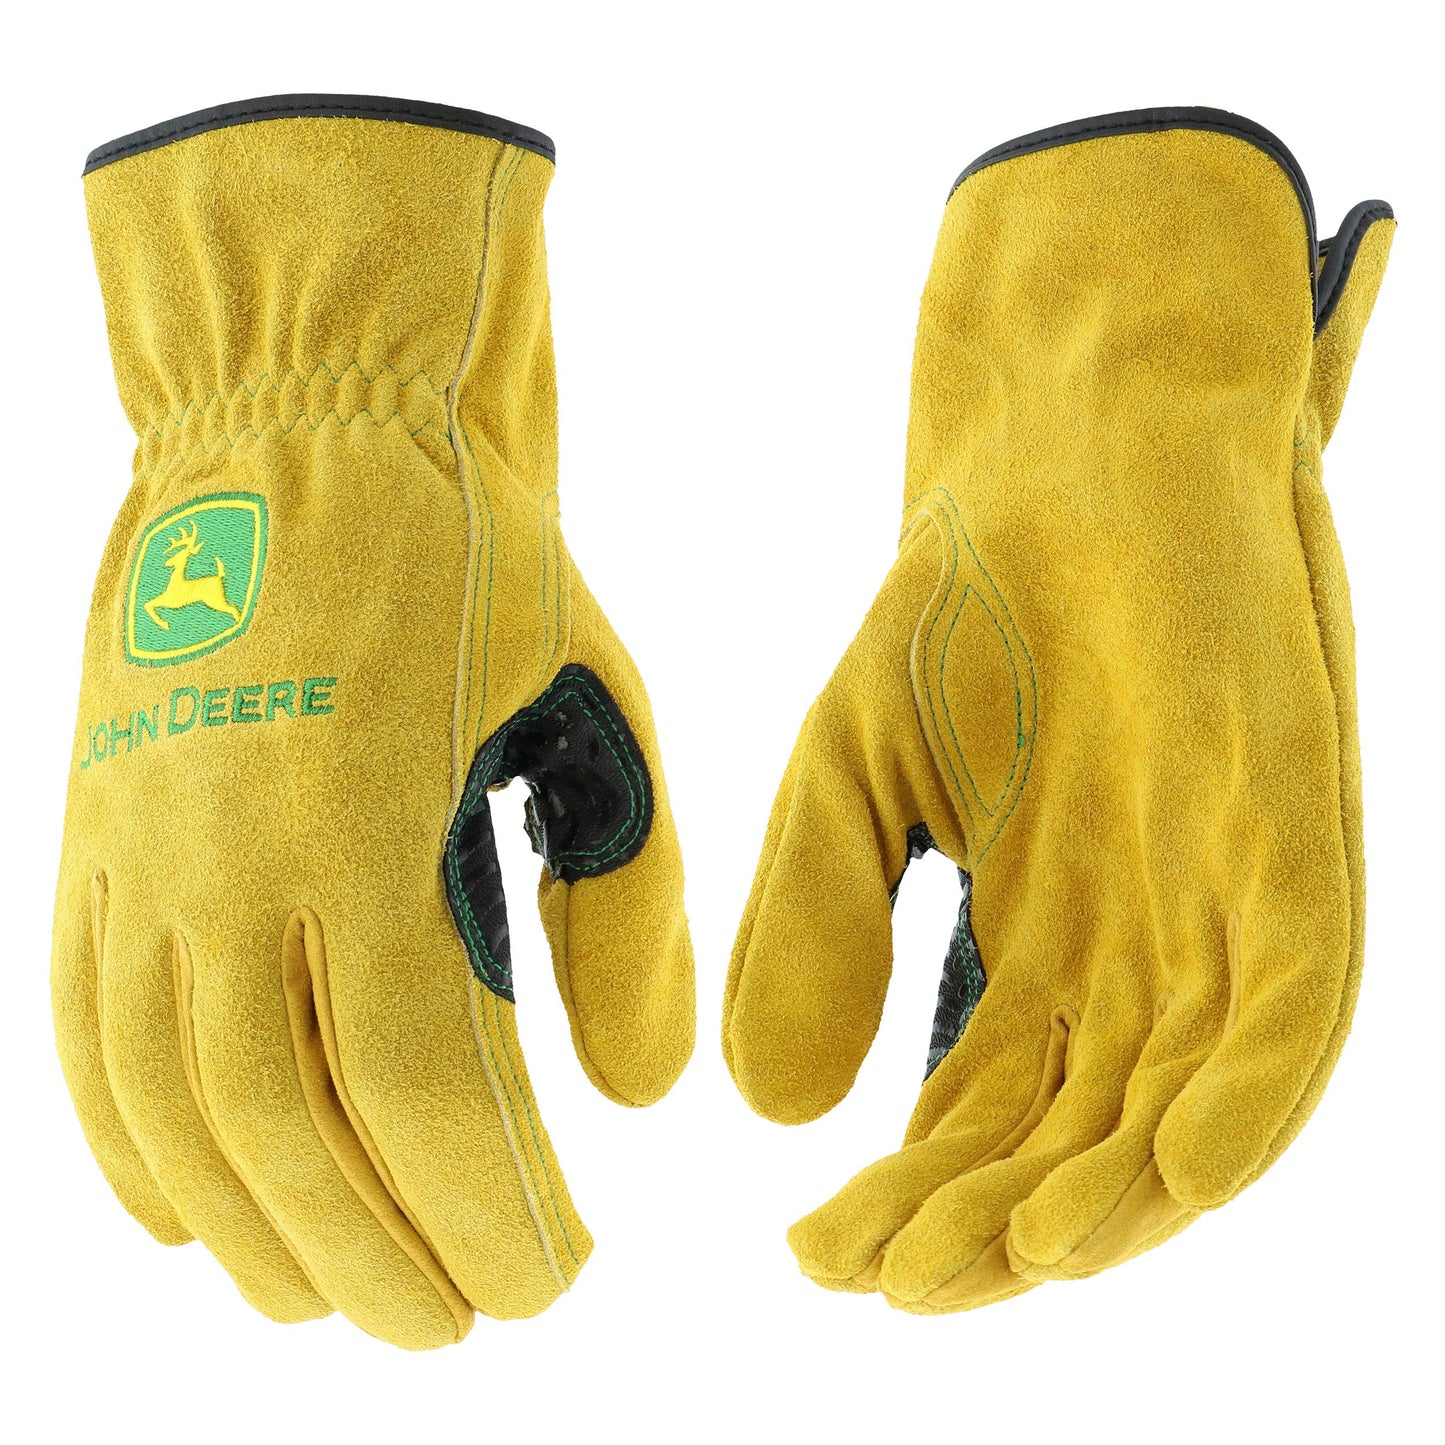 John Deere Men's Tan Split Cowhide Leather Gloves (Medium)(1 pair) - LP42389